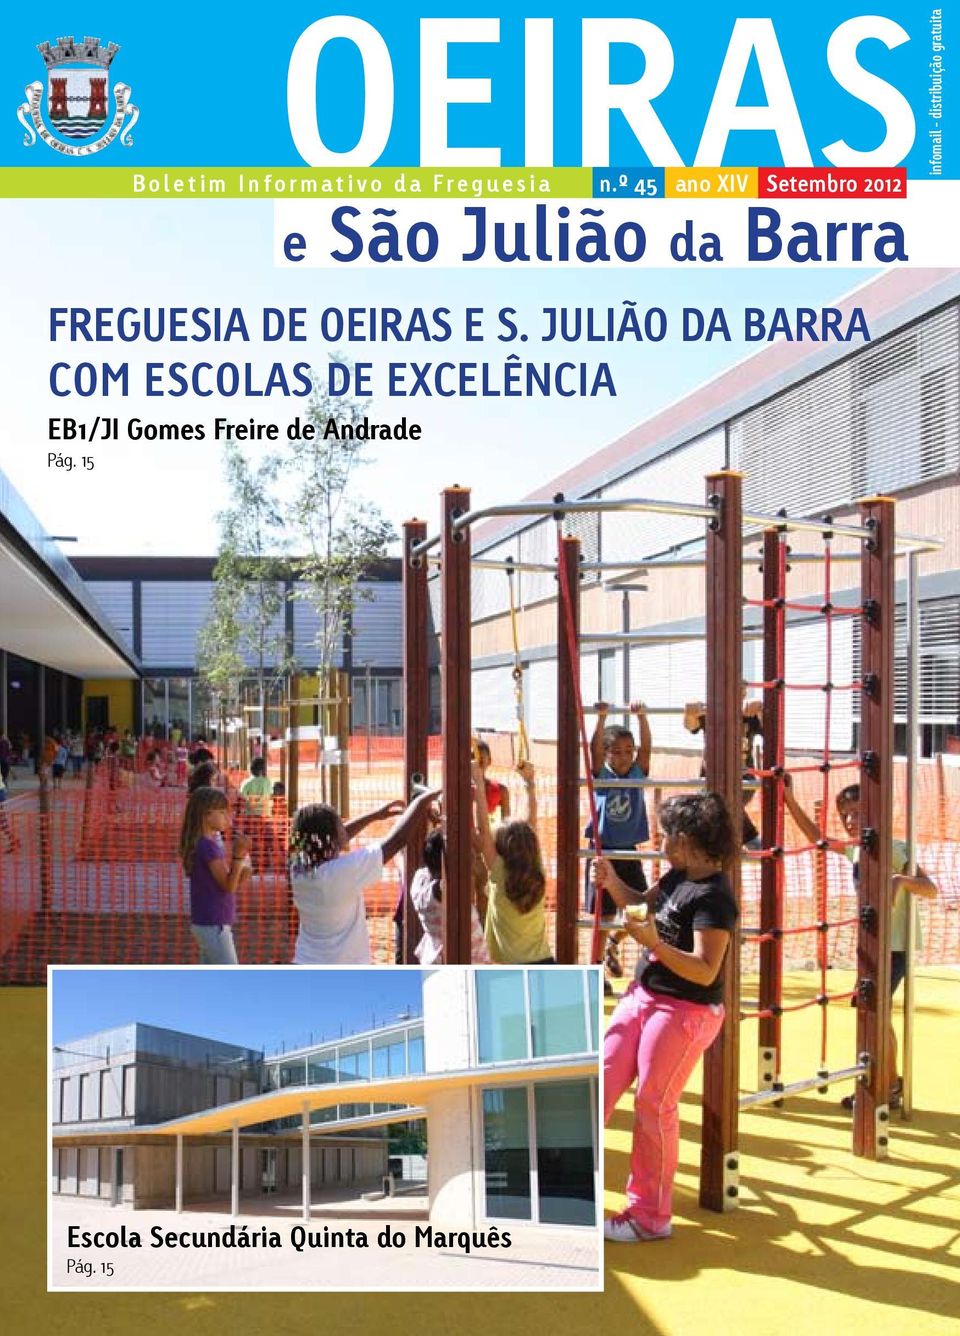 E S. JULIÃO DA BARRA COM ESCOLAS DE EXCELÊNCIA EB1/JI Gomes Freire